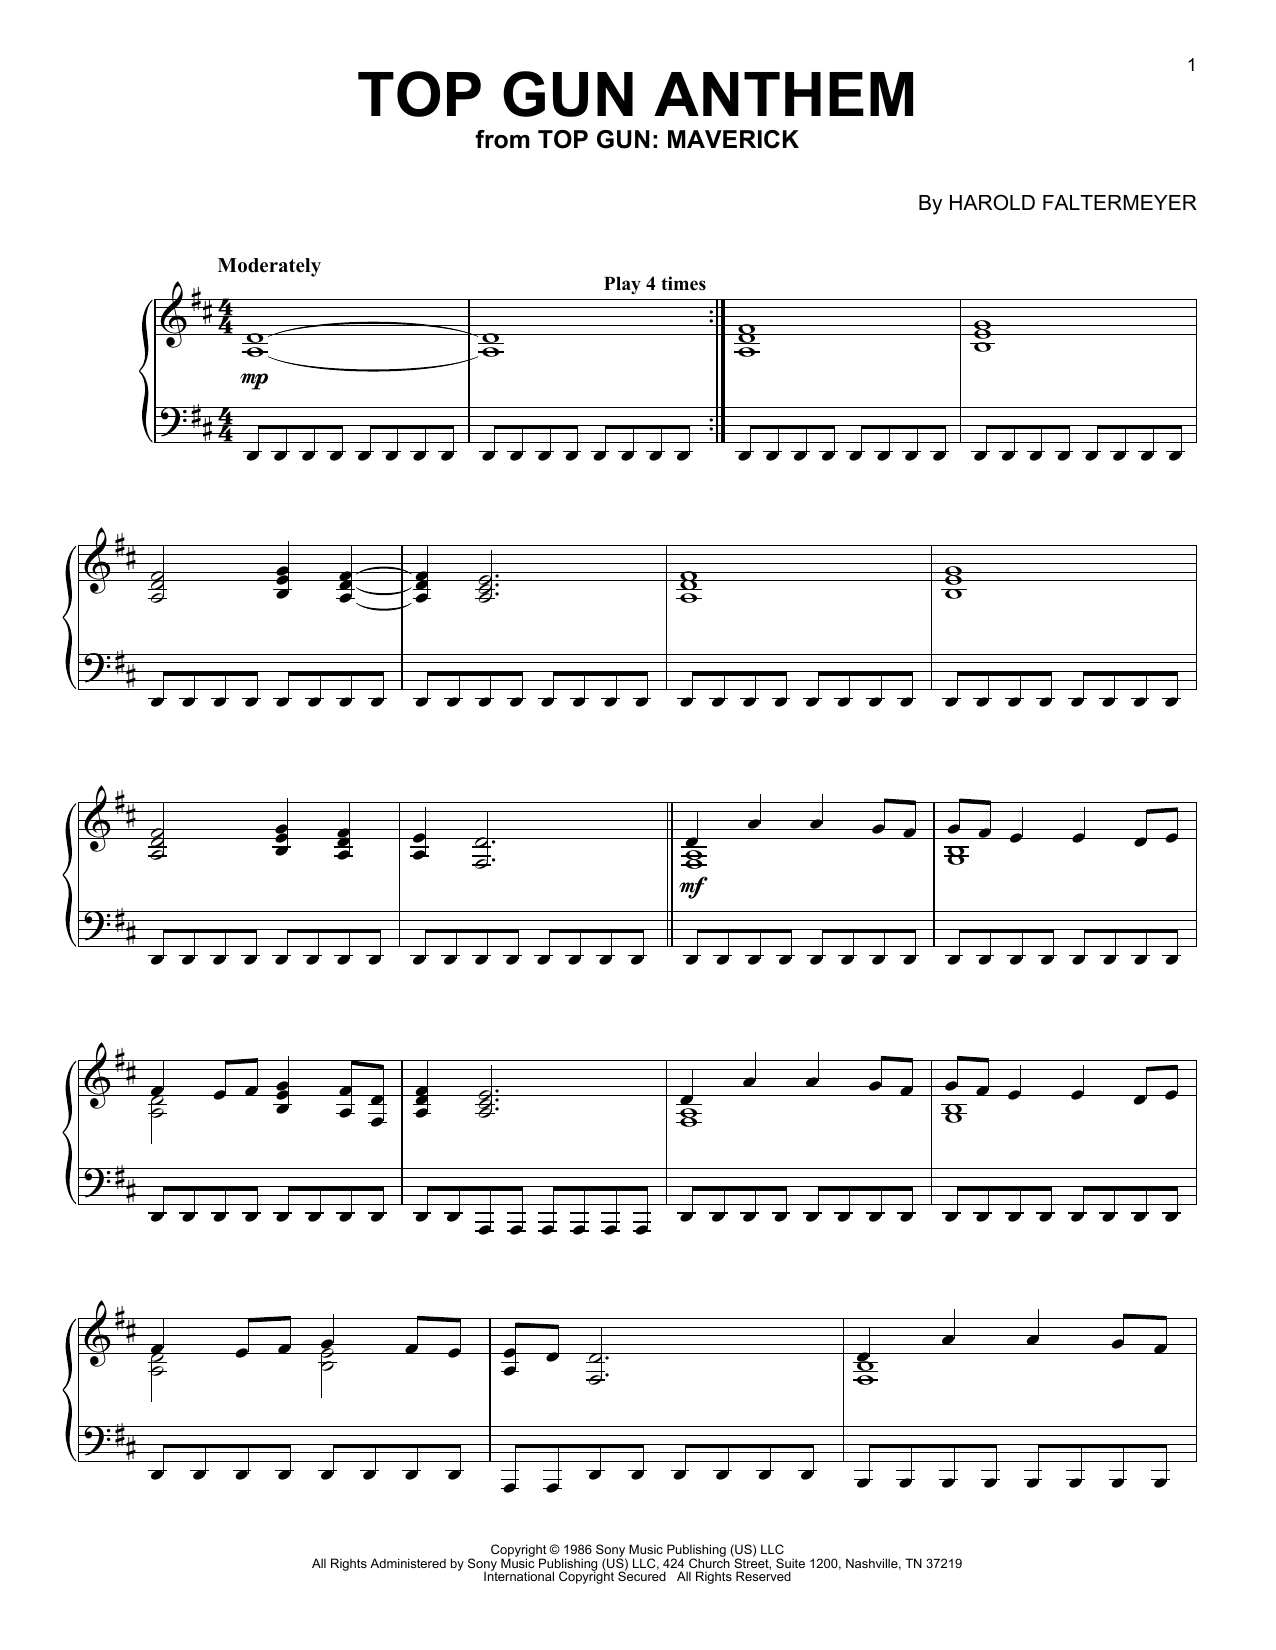 Top Gun: Top Gun Anthem - song and lyrics by Geek Music